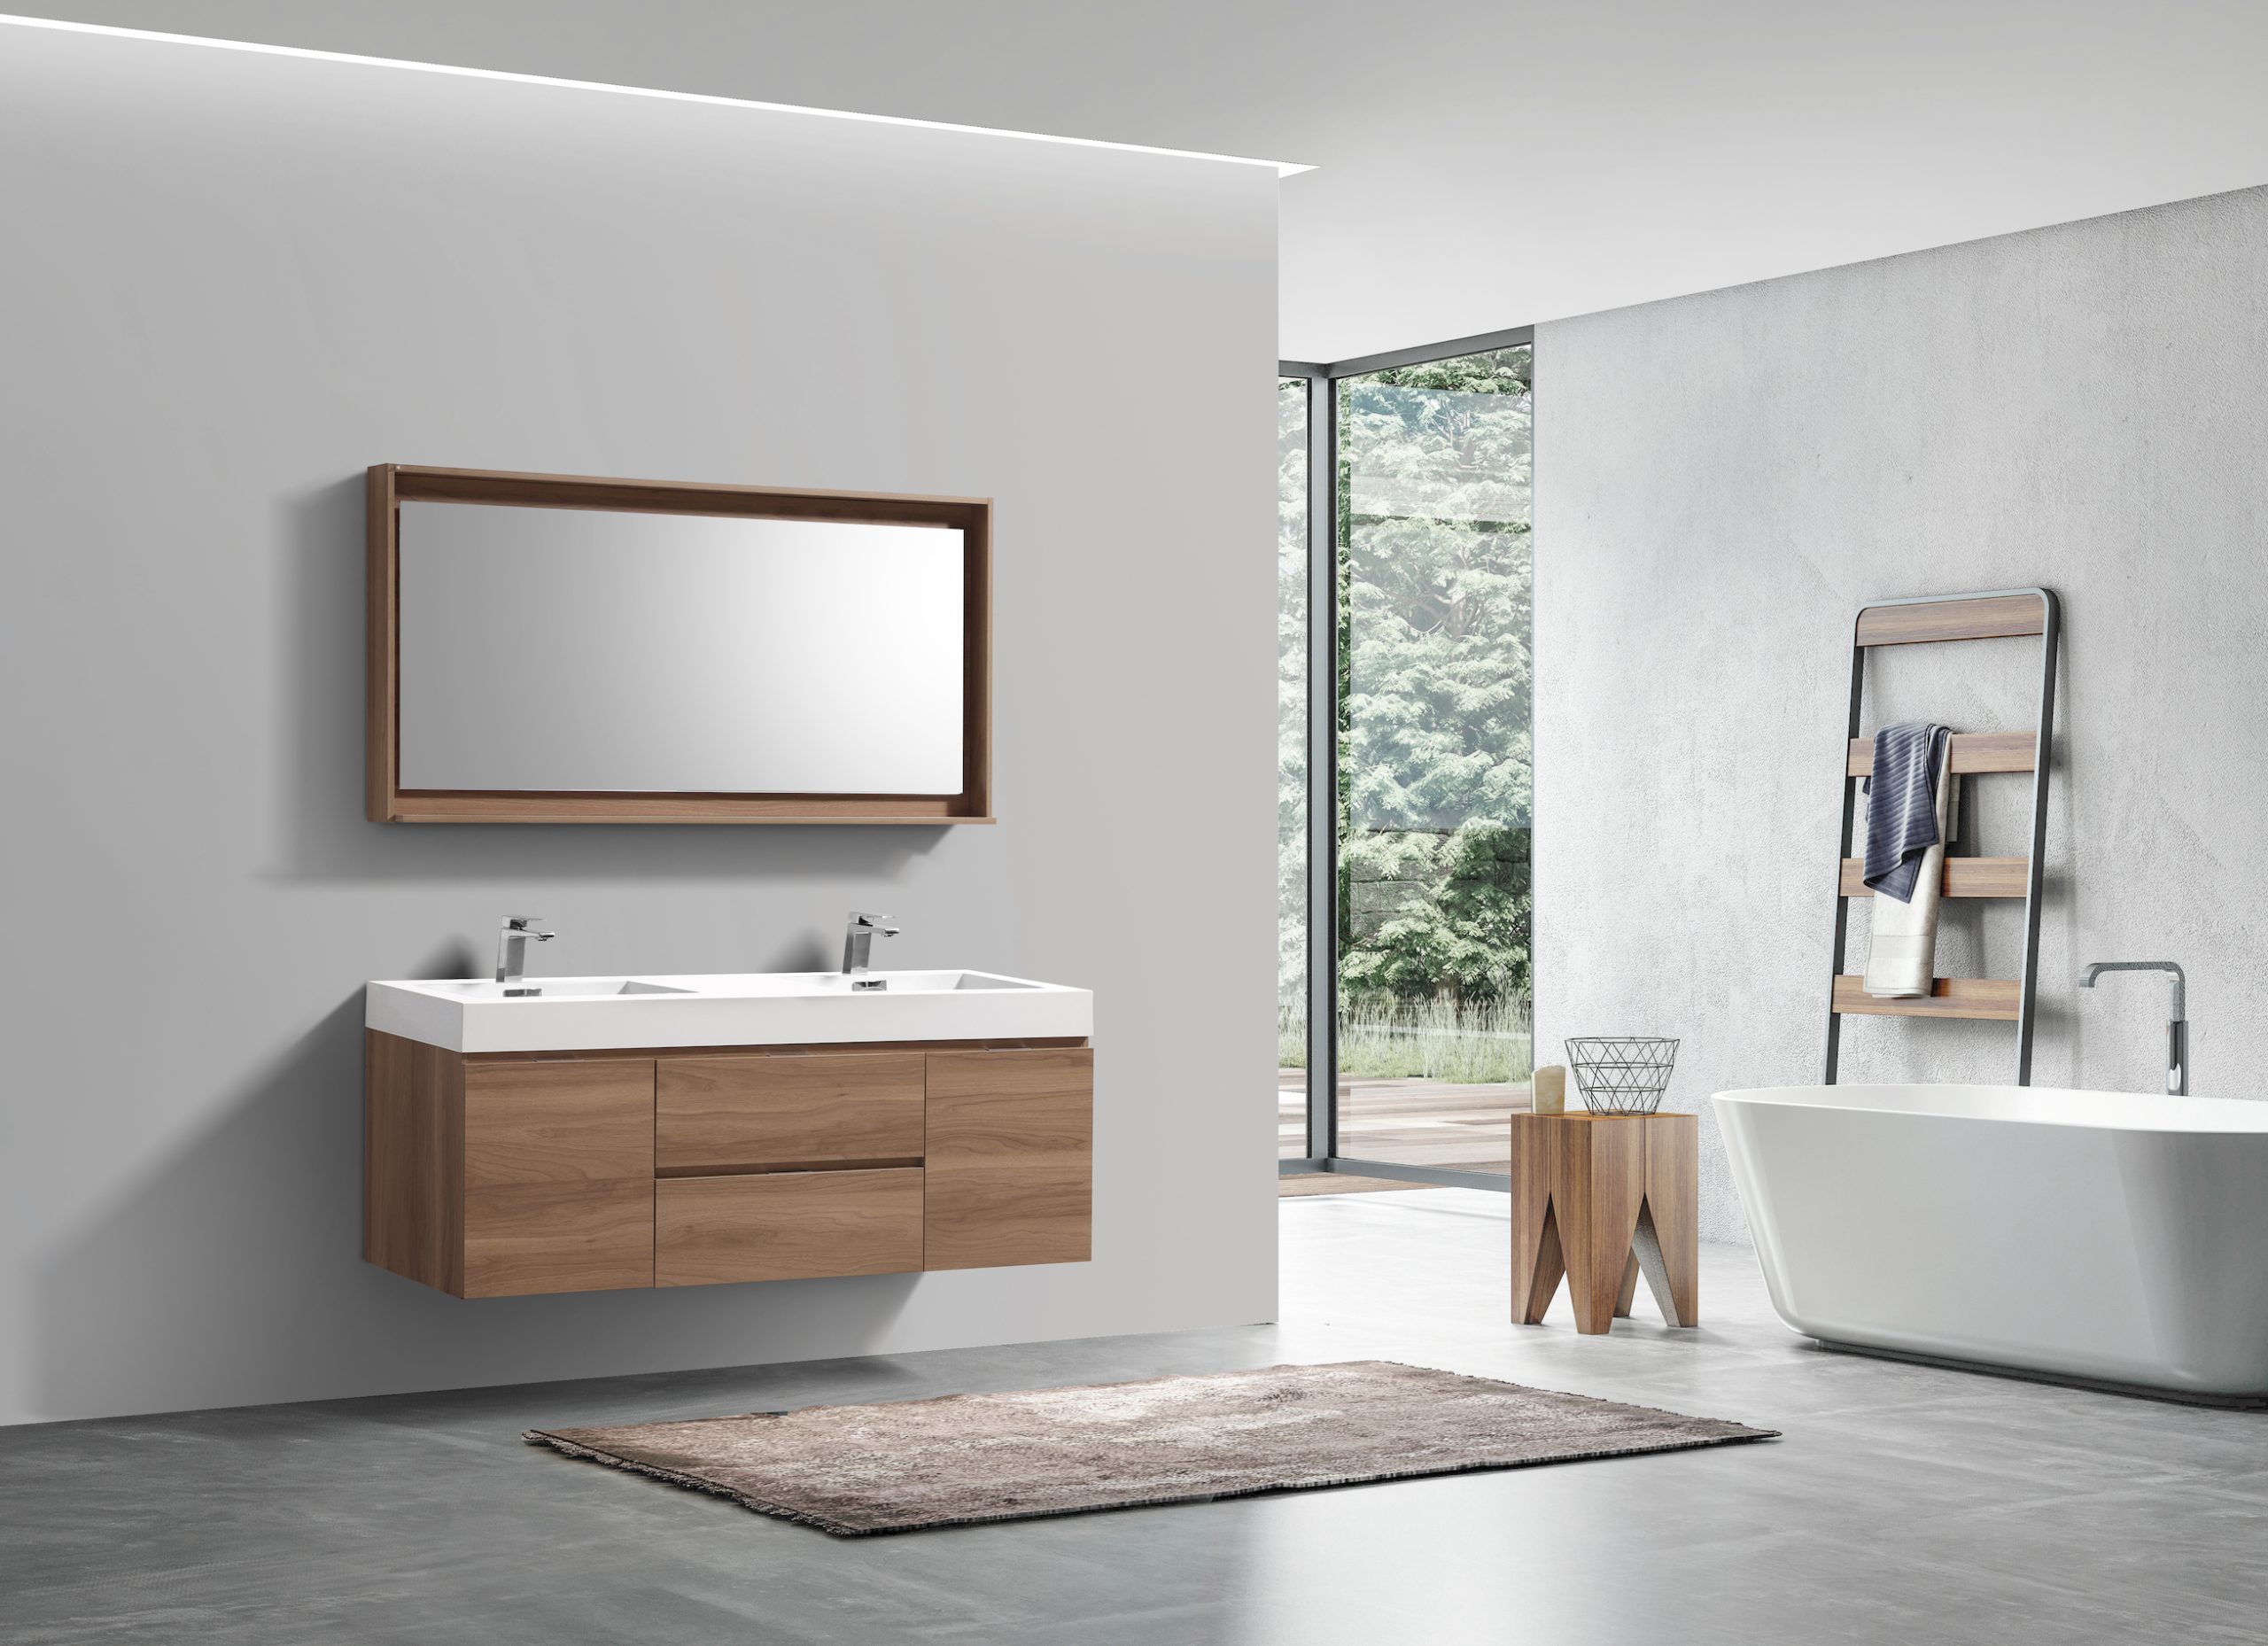 Bliss 60″ Honey Oak Wall Mount Double Sink Modern Bathroom Vanity